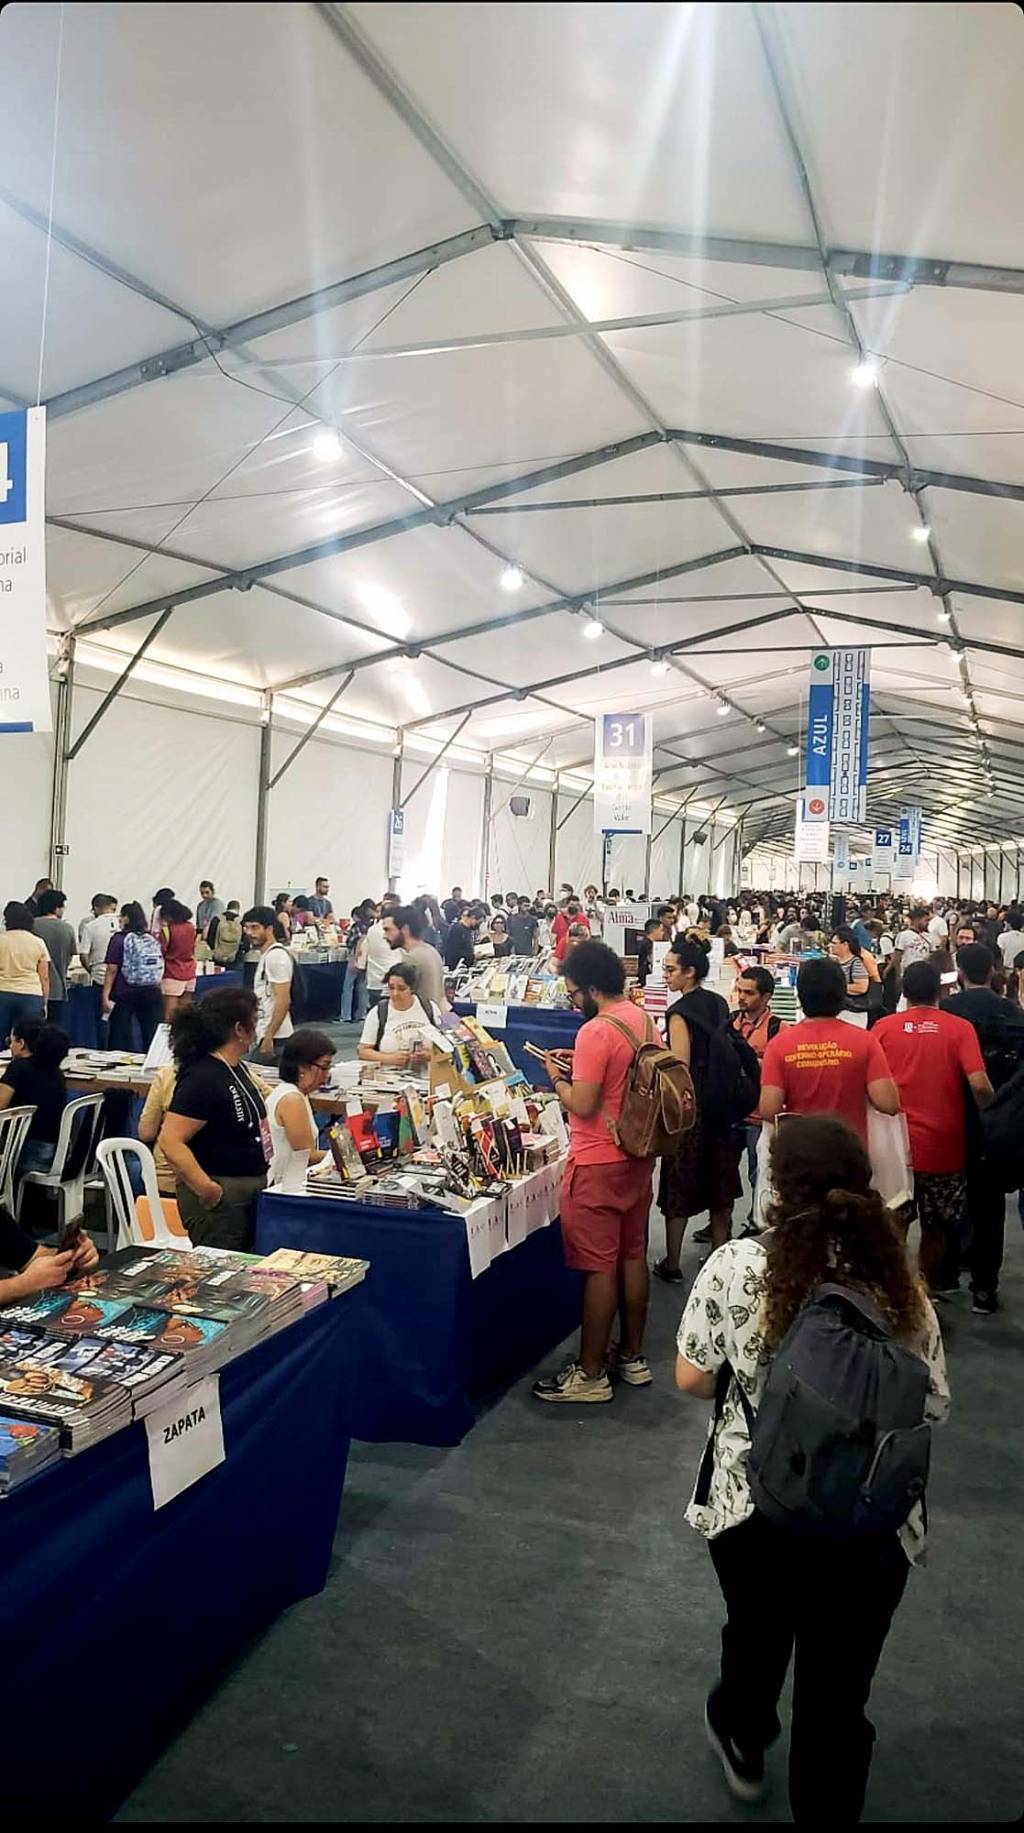 Foto exibe área interna de grande tenda com fileiras de mesas com livros e pessoas ao redor.